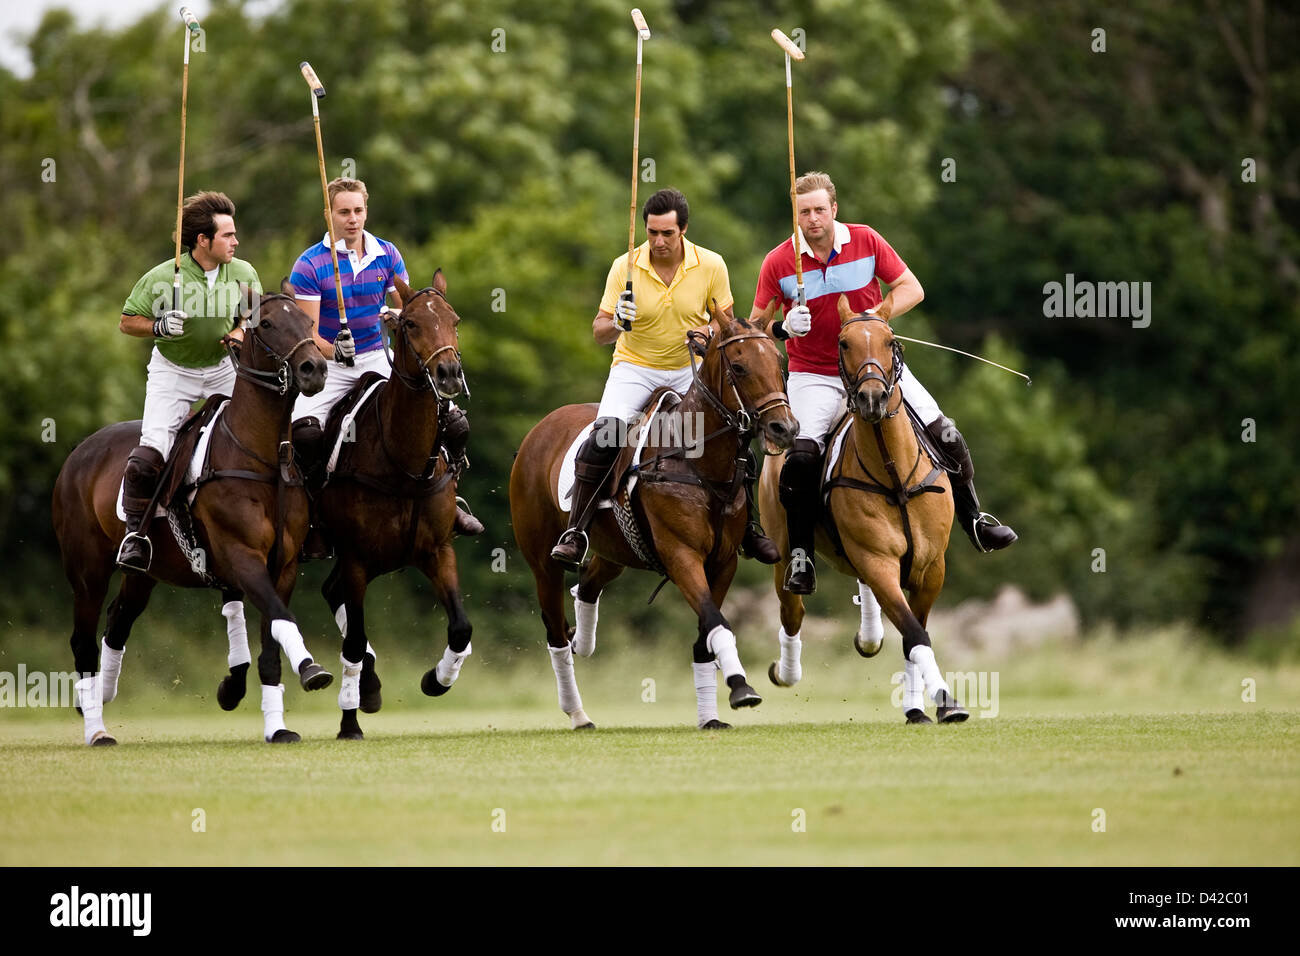 Joueurs de Polo à cheval, de rivalité Banque D'Images